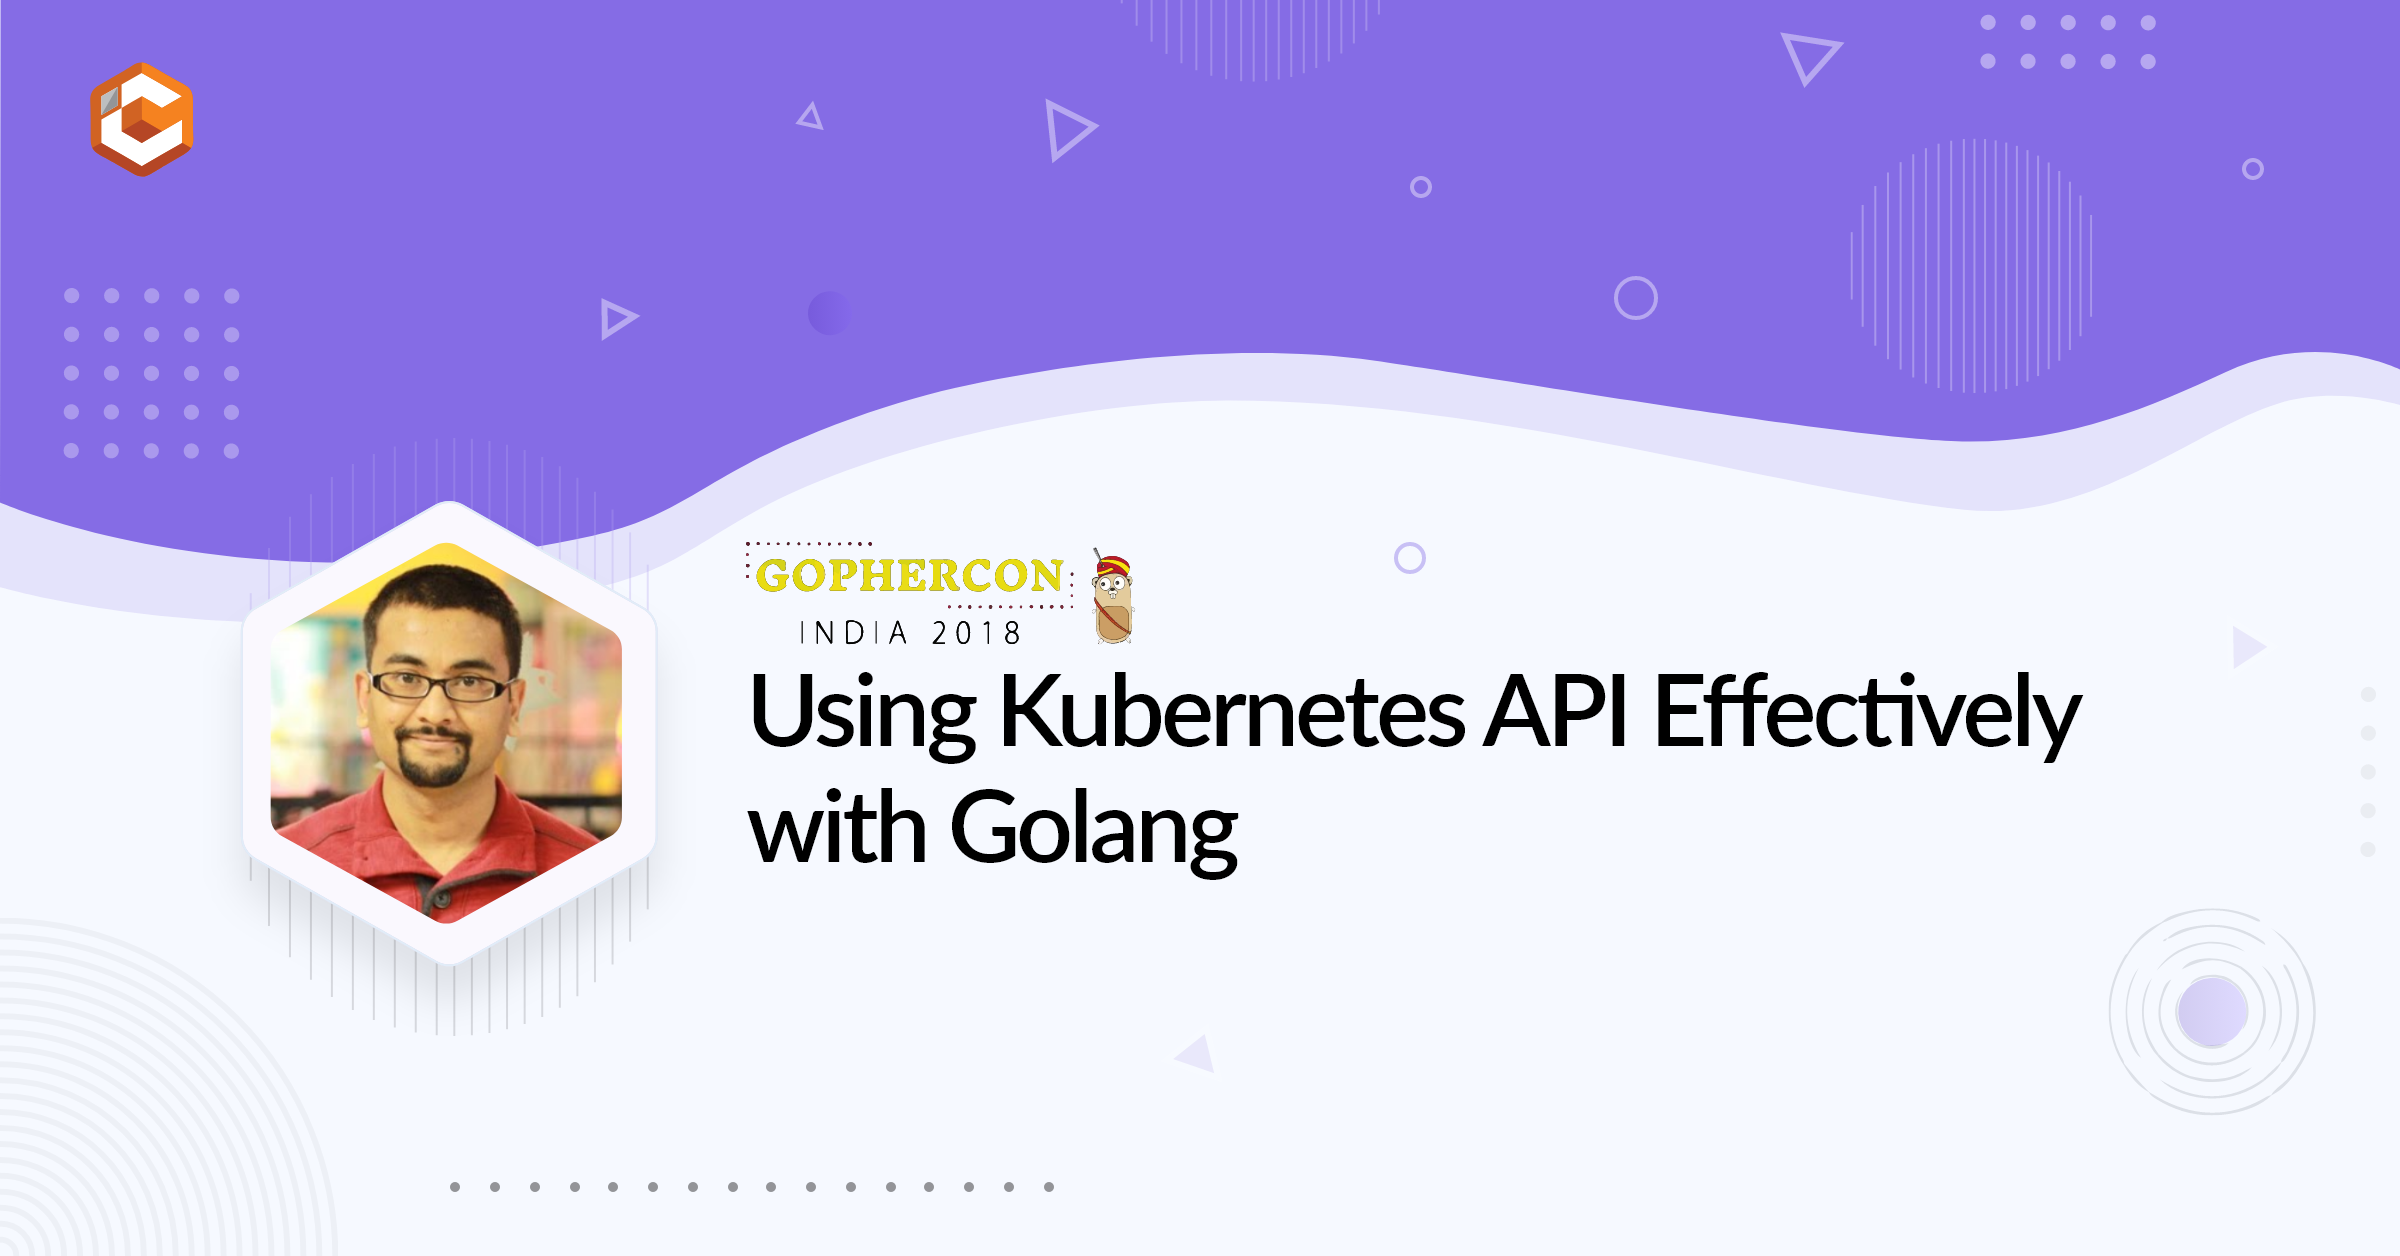 Using Kubernetes API Effectively with Golang - K8s Day India